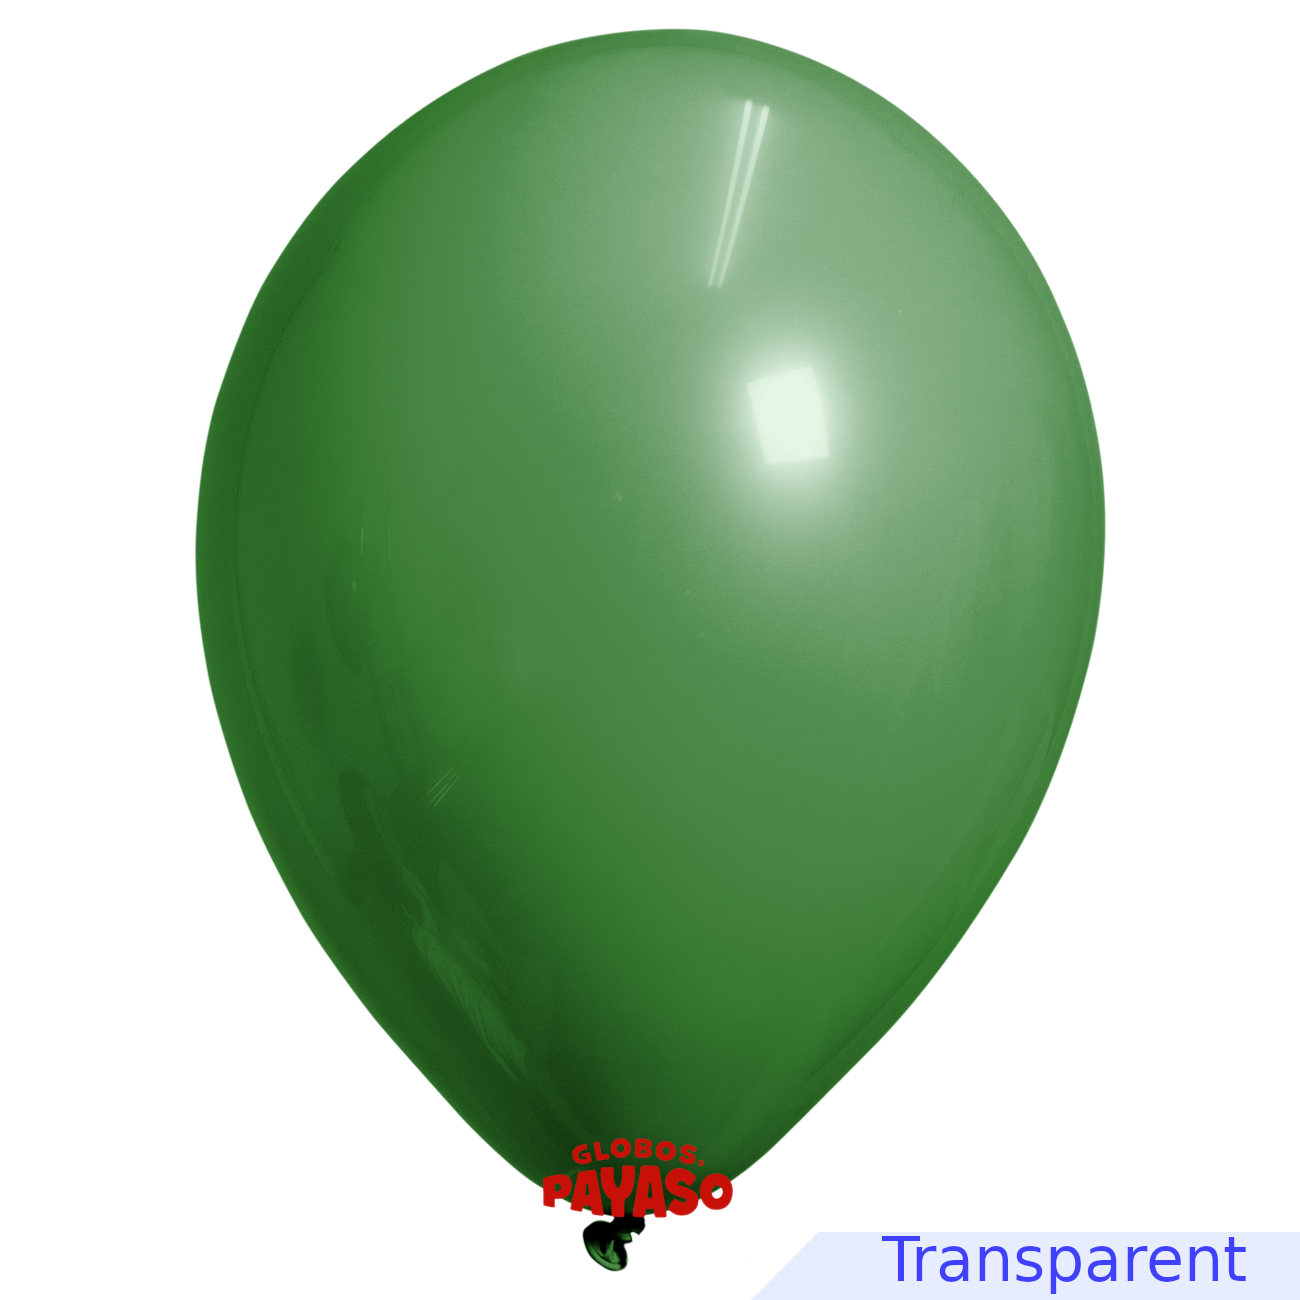 Globos Payaso / Unique 5" Vert Émeraude Translucide Décorateur Ballon